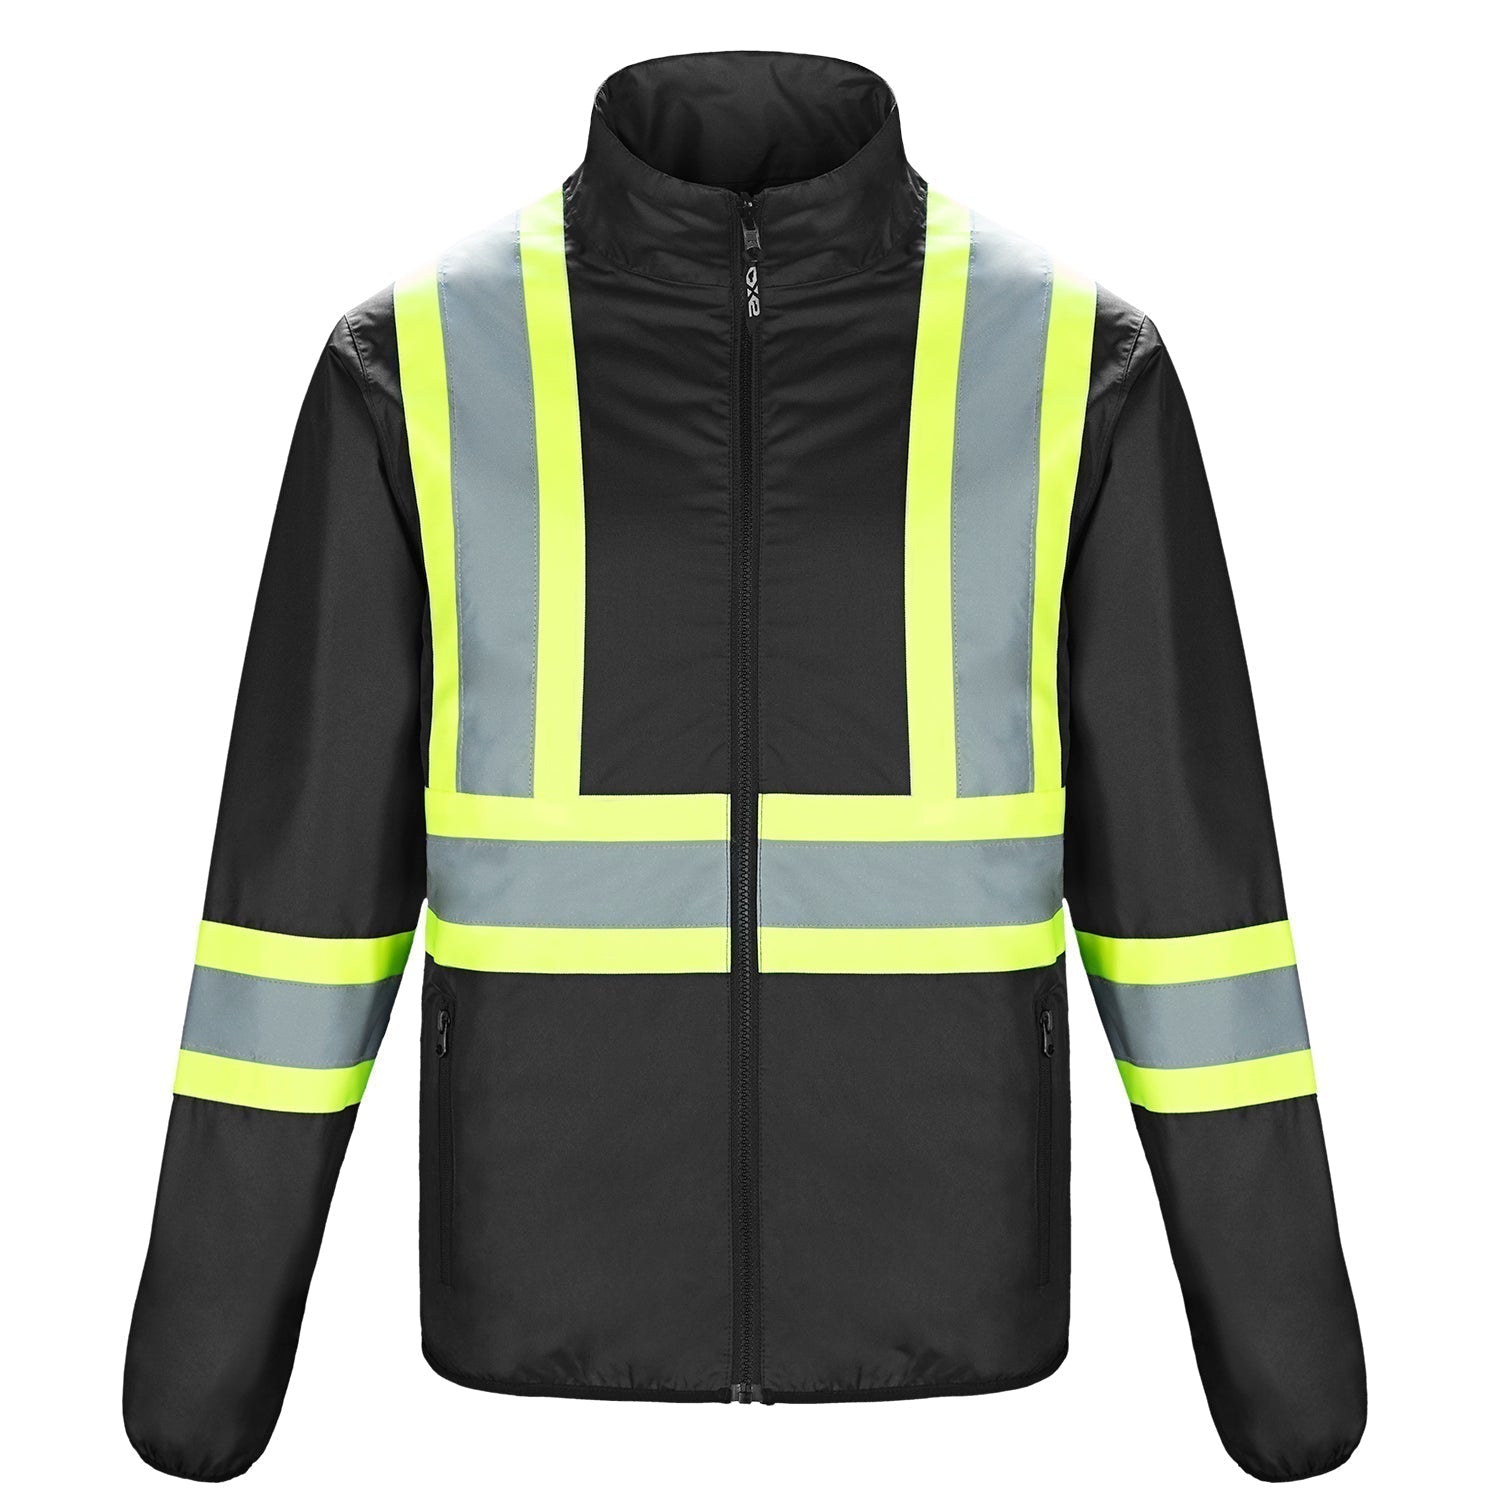 L01260 - Safeguard Men’s Hi - Vis Reversible Jacket Black